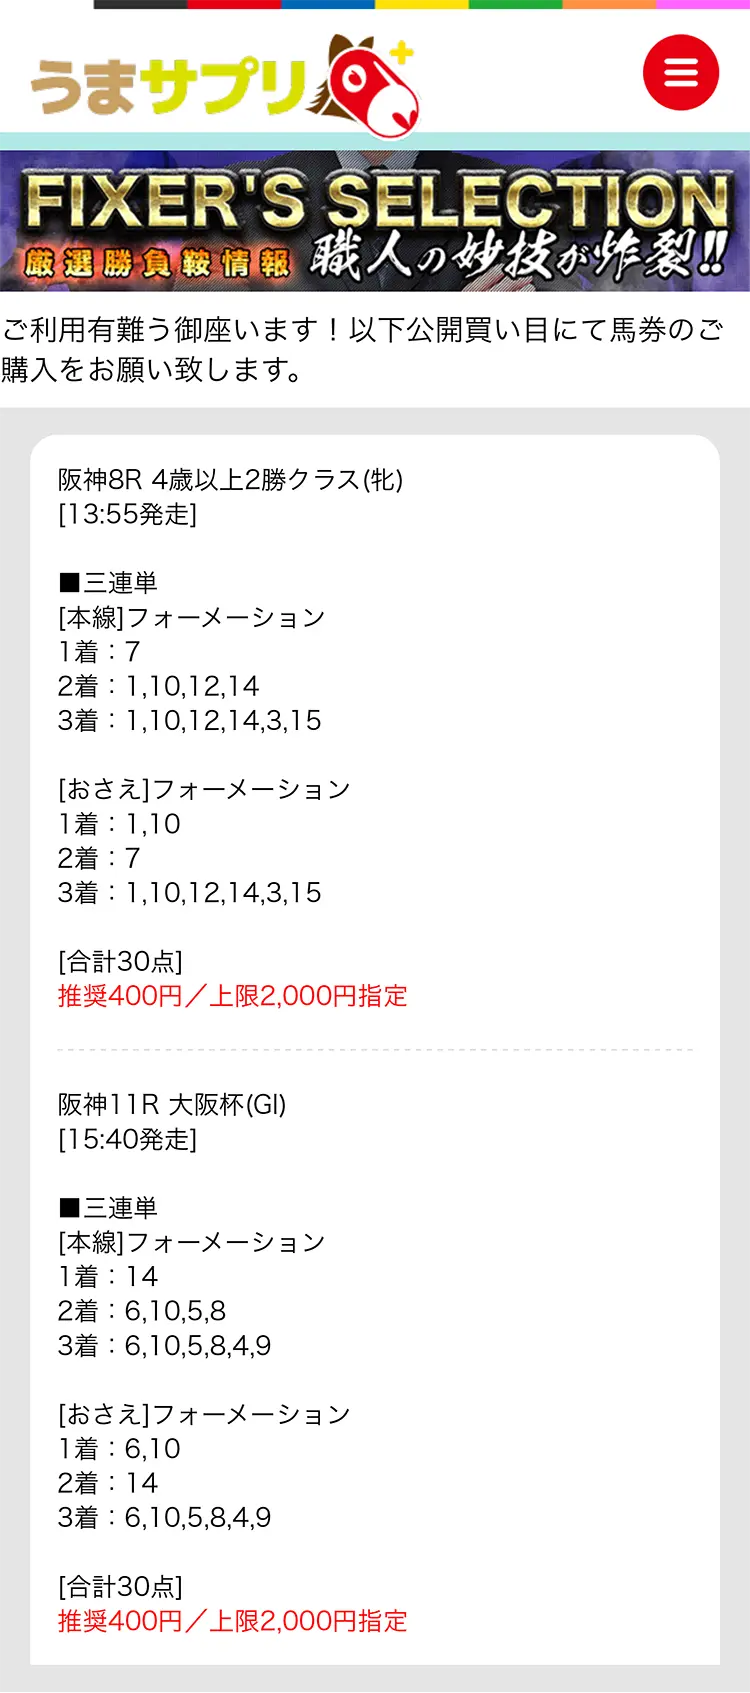 うまサプリ4月3日(日)『FIXER'S SELECTION阪神』買い目